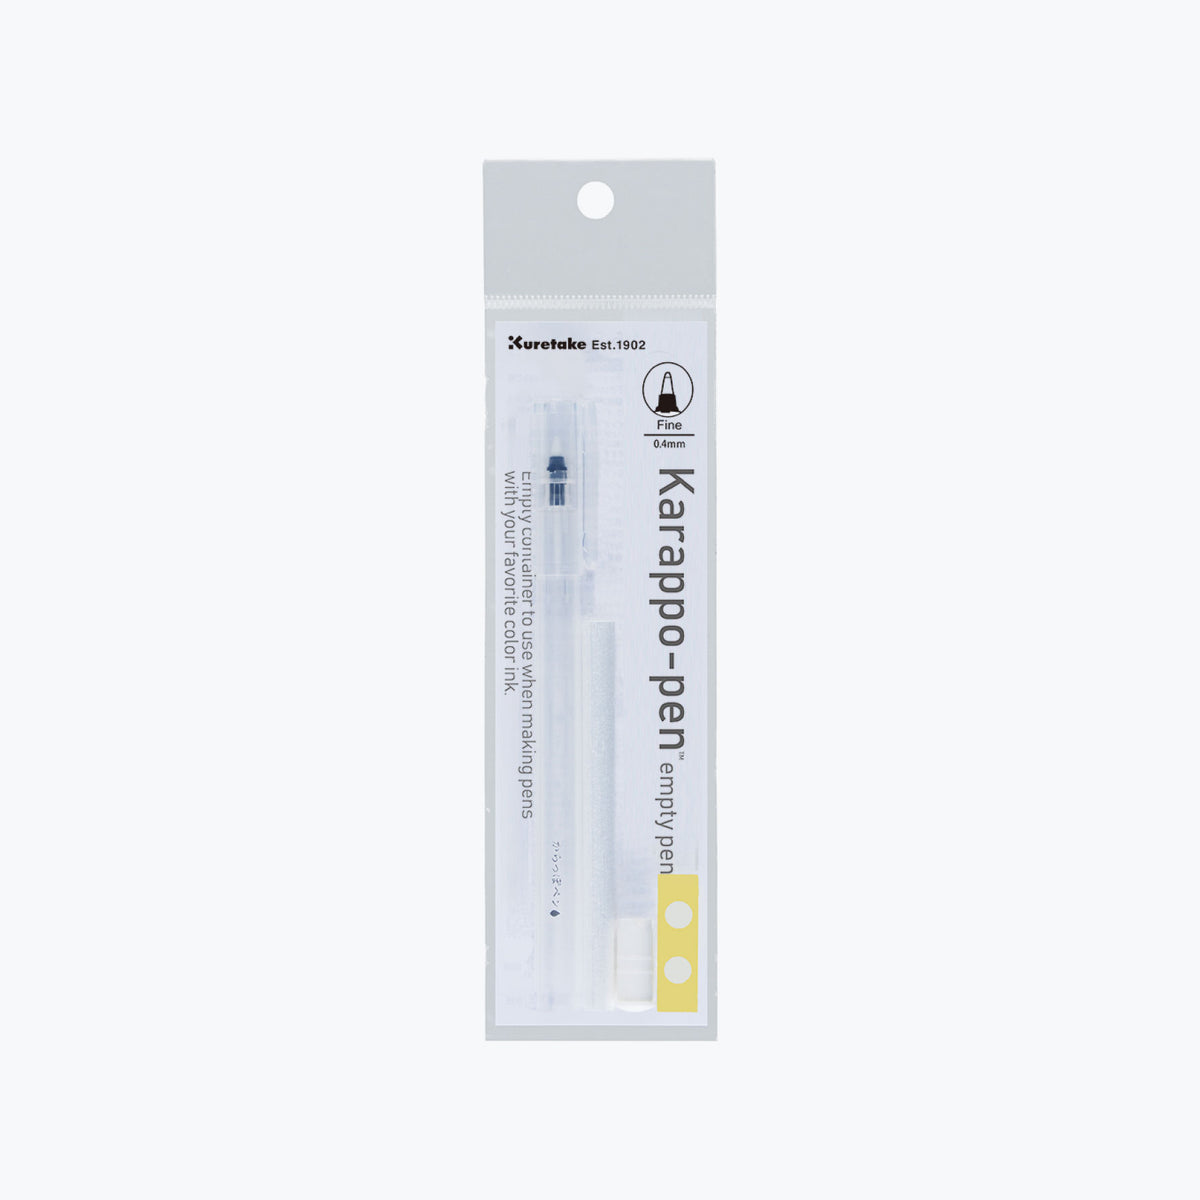 Kuretake - Karappo-Pen (Empty Pen) - Fine (0.4mm)